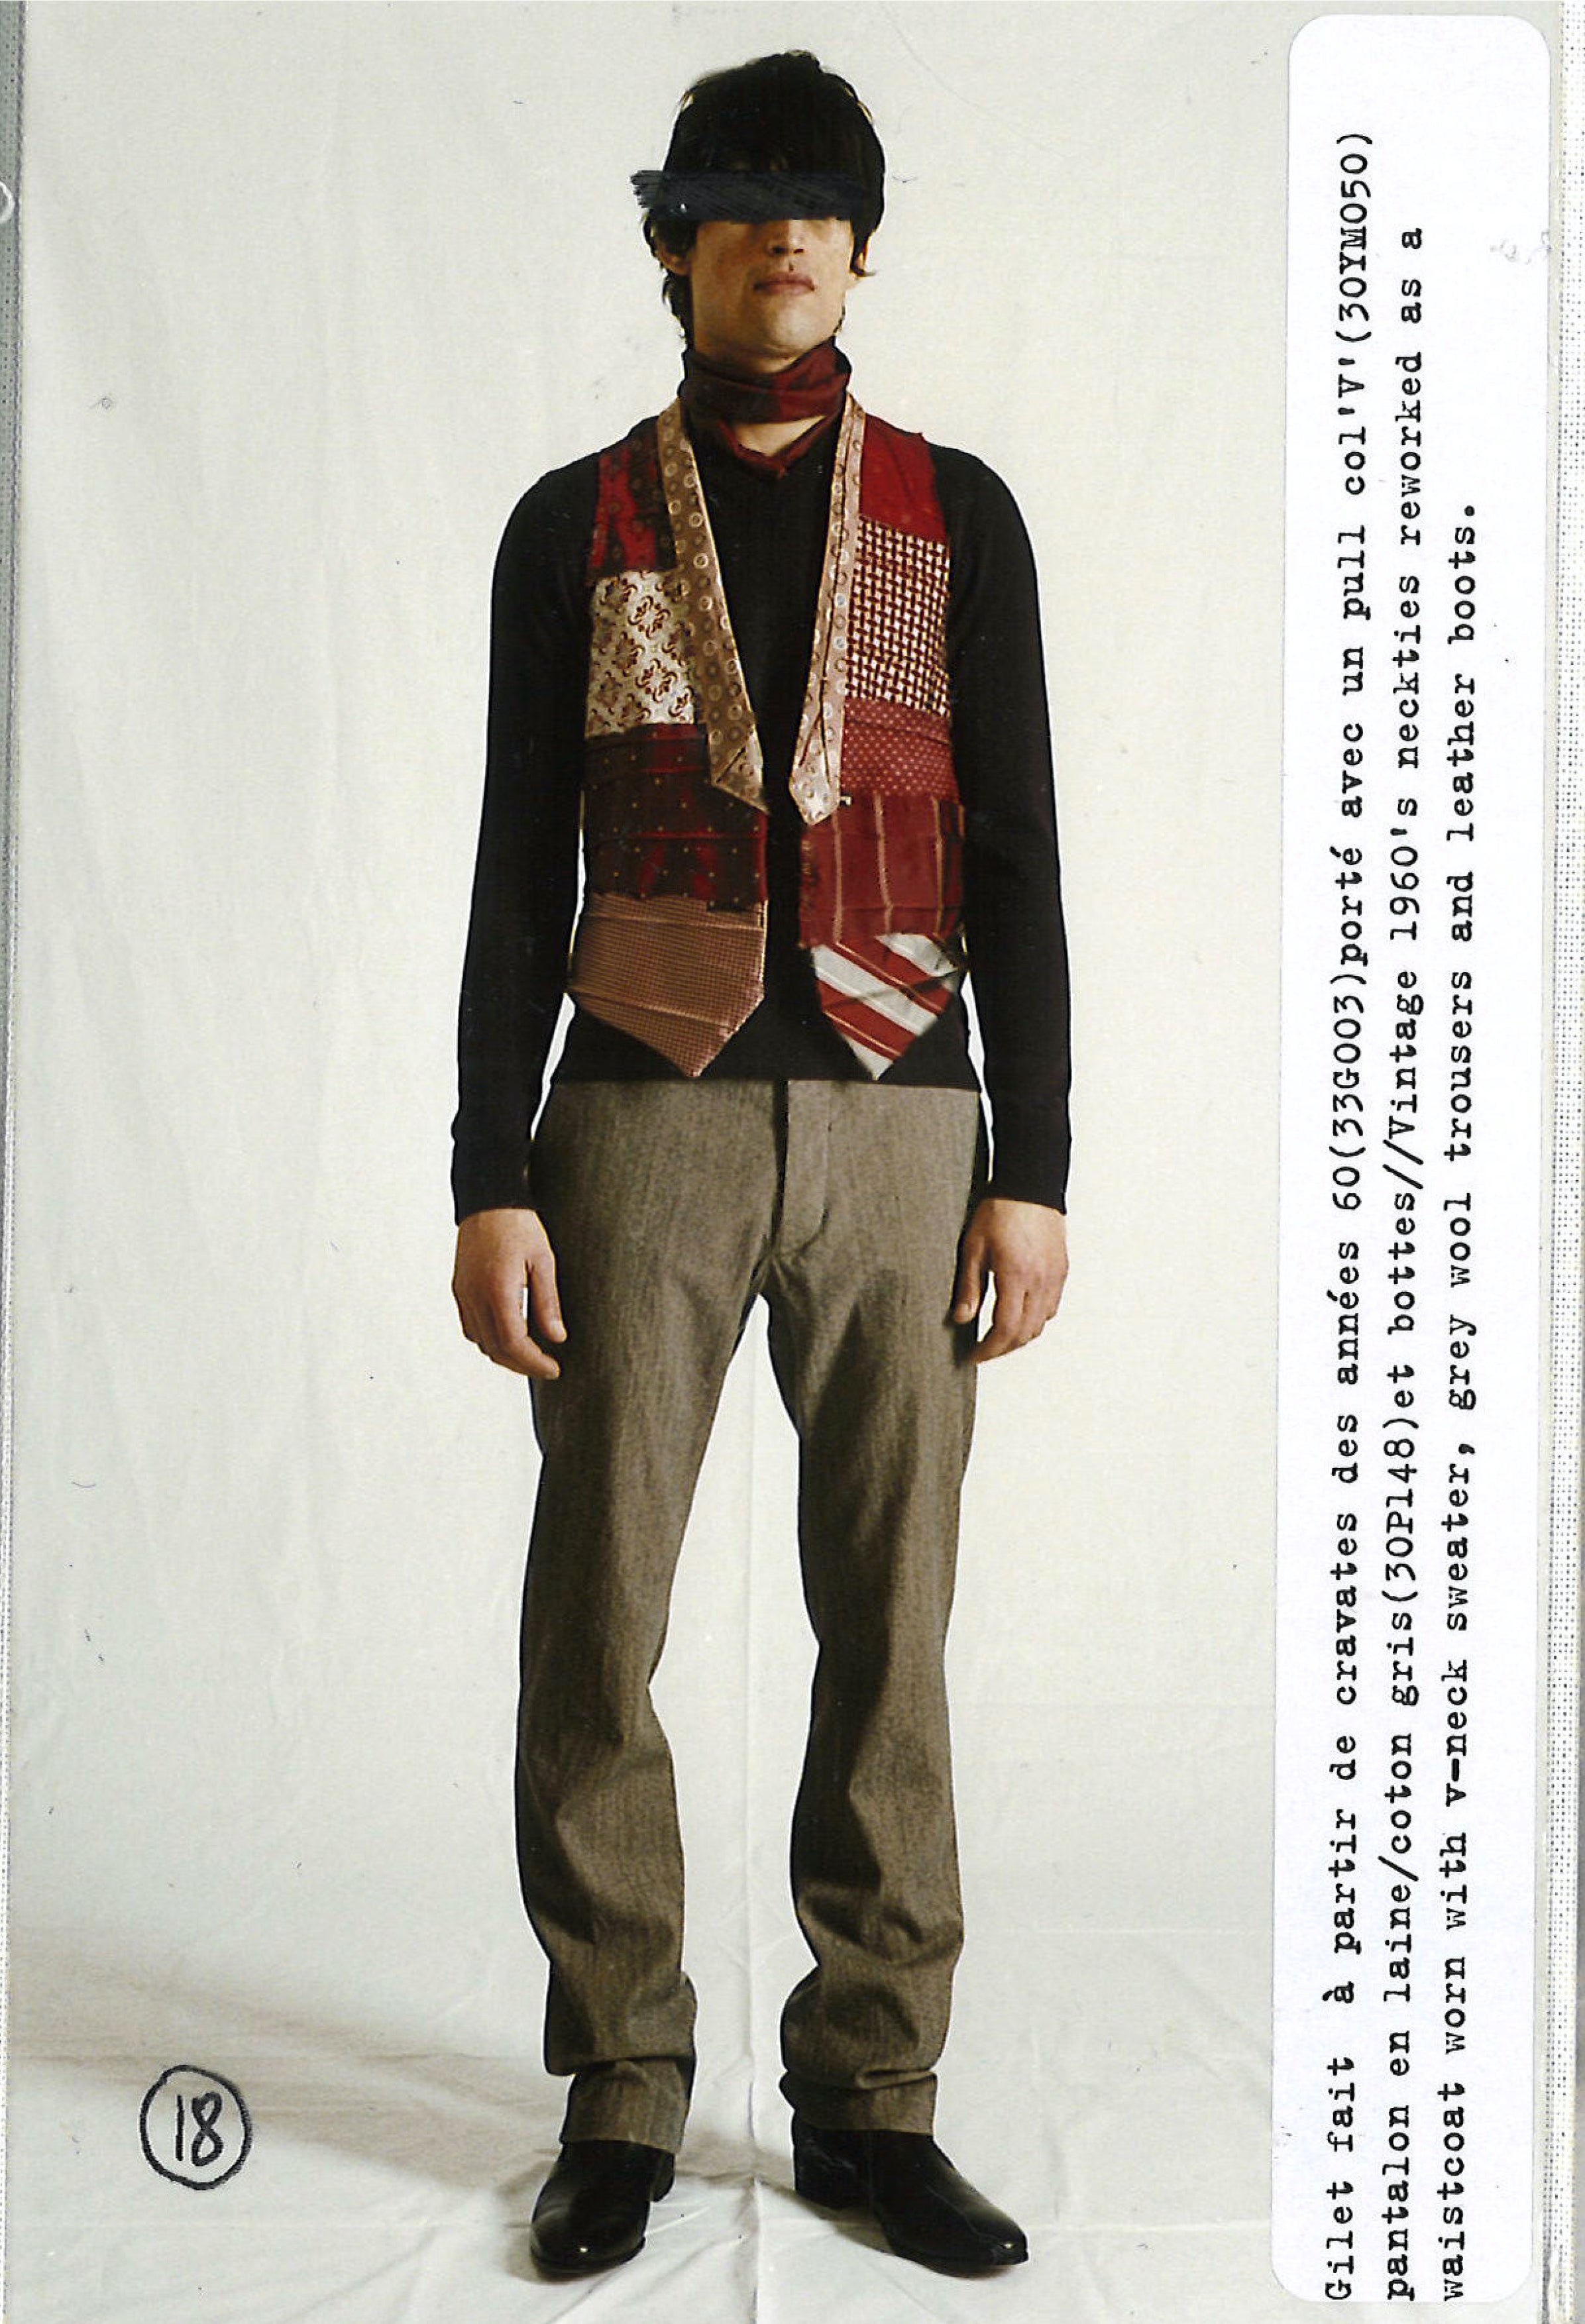 Maison Martin Margiela Lookbook
Menswear Collection Autumn/Winter 2005-06